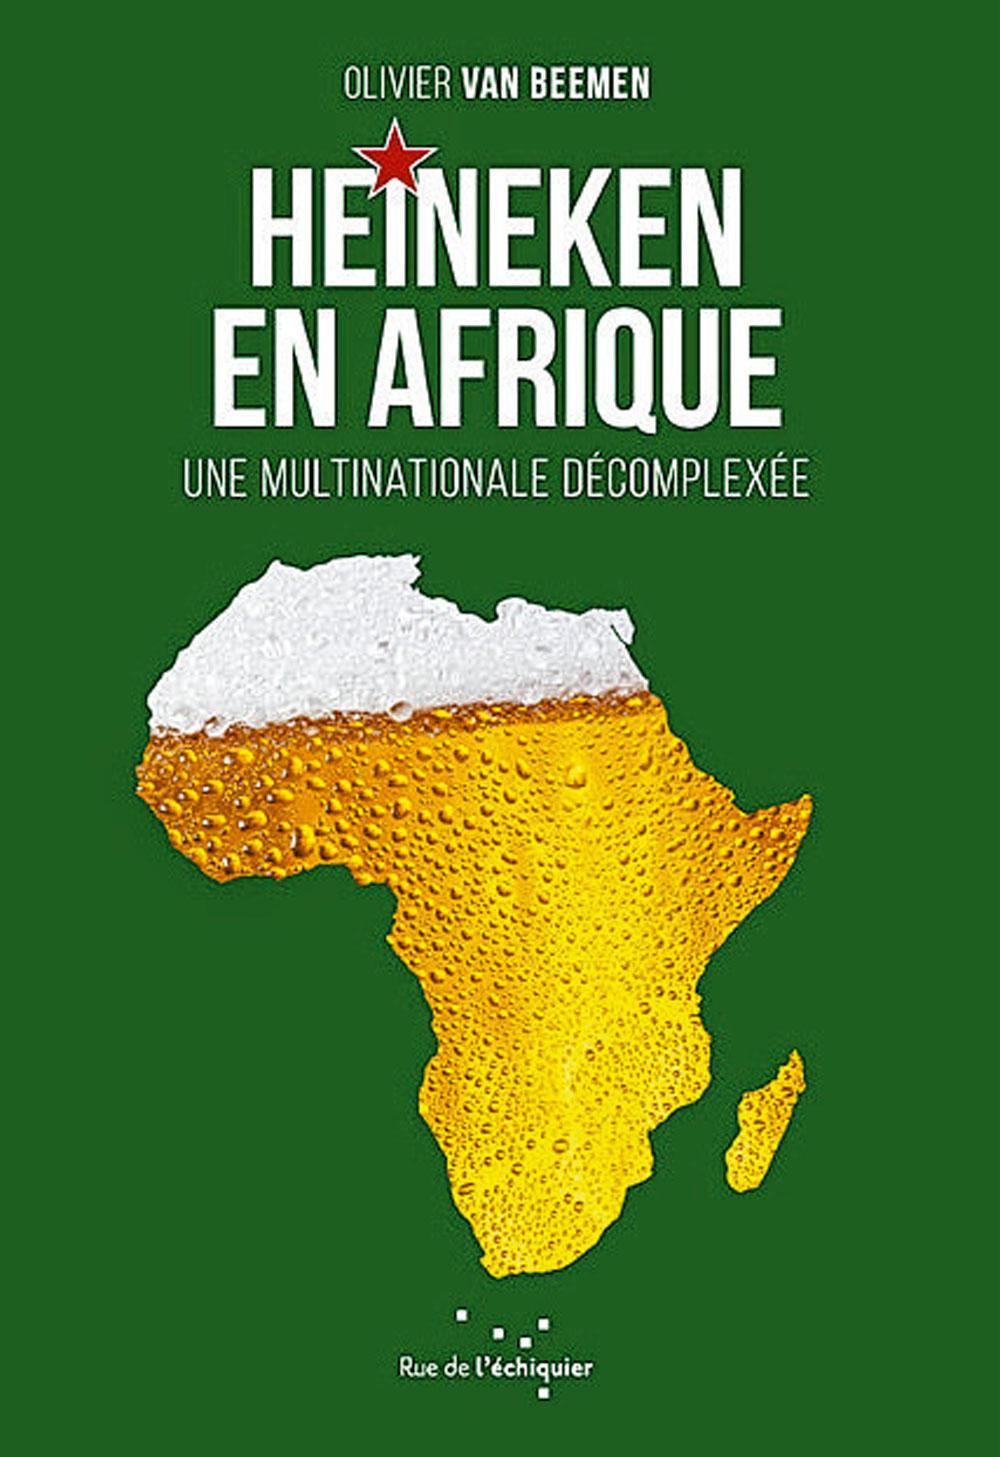 Heineken en Afrique, une multinationale décomplexée, par Olivier van Beemen, éd. Rue de l'échiquier, 304 p.